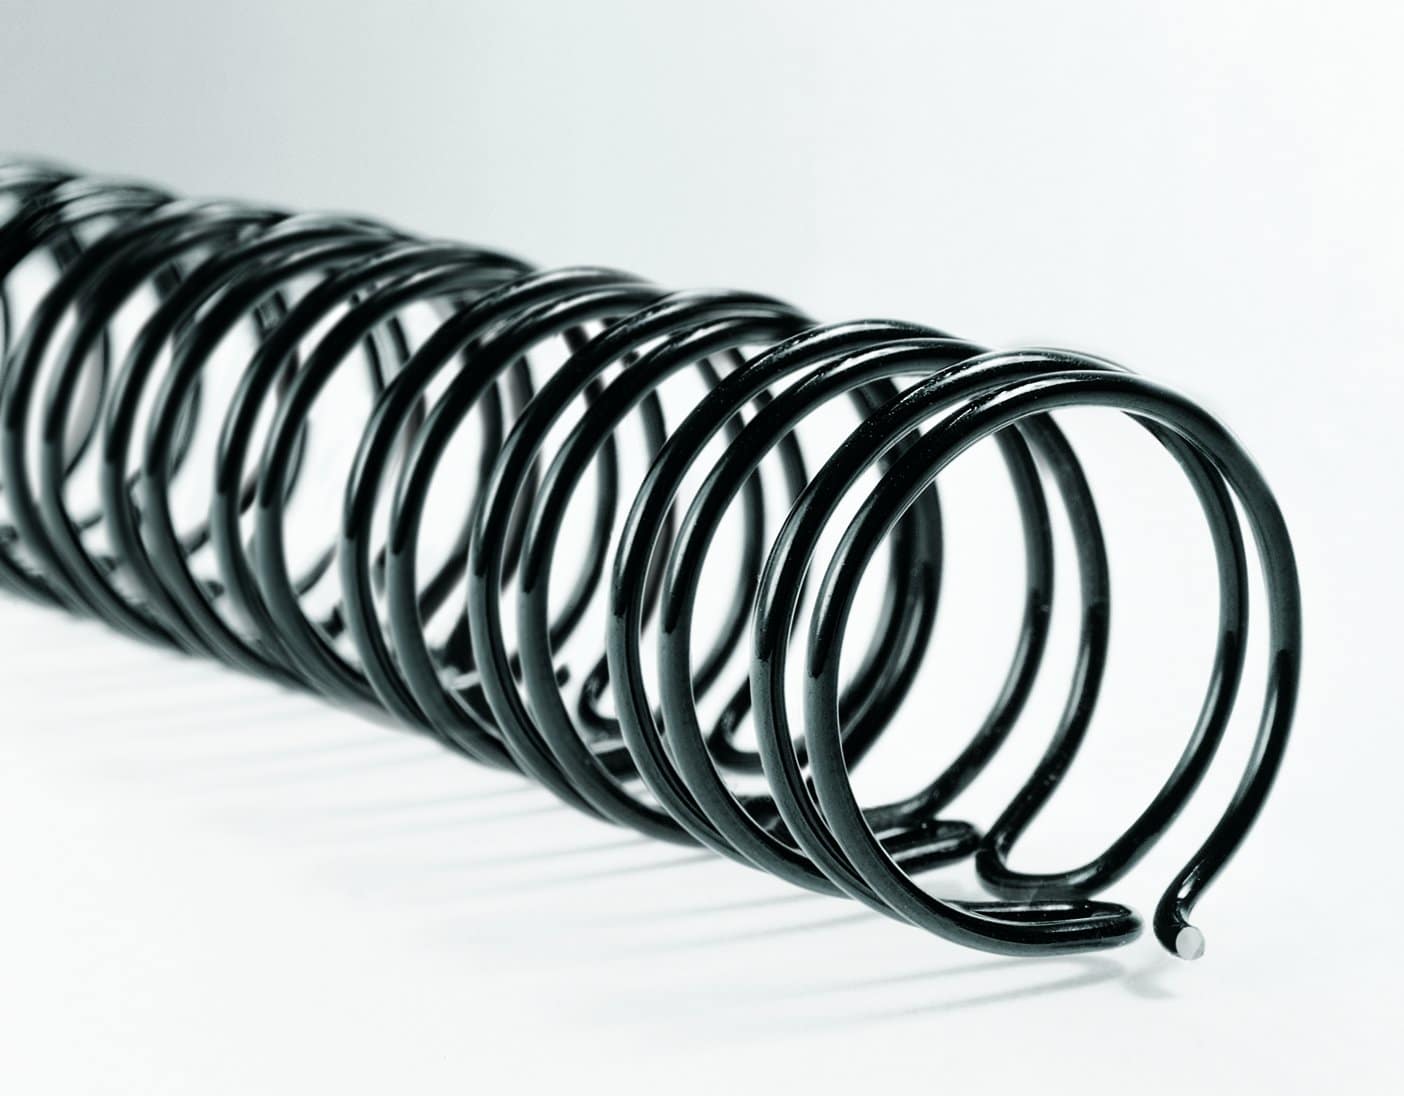 Promo Relieuse perforeuse manuel wirebind w15 pour anneaux métal